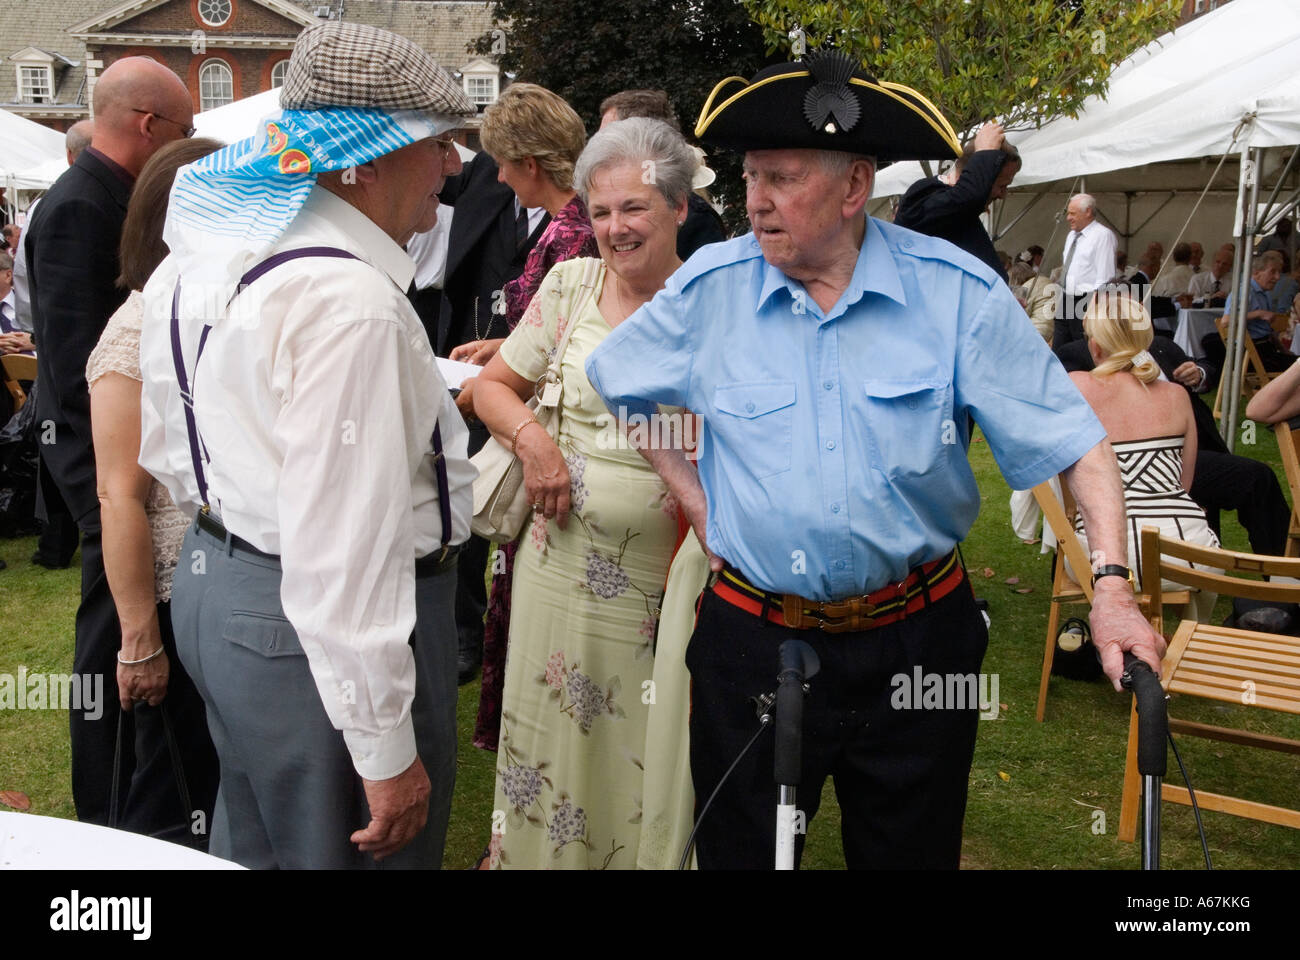 Kriegsveteranen Chelsea Pensioners London. Zwei alte Soldaten Männer Gründertag jährliche Sommergartenparty mit Tochter, London England UK 2006 2000s Stockfoto